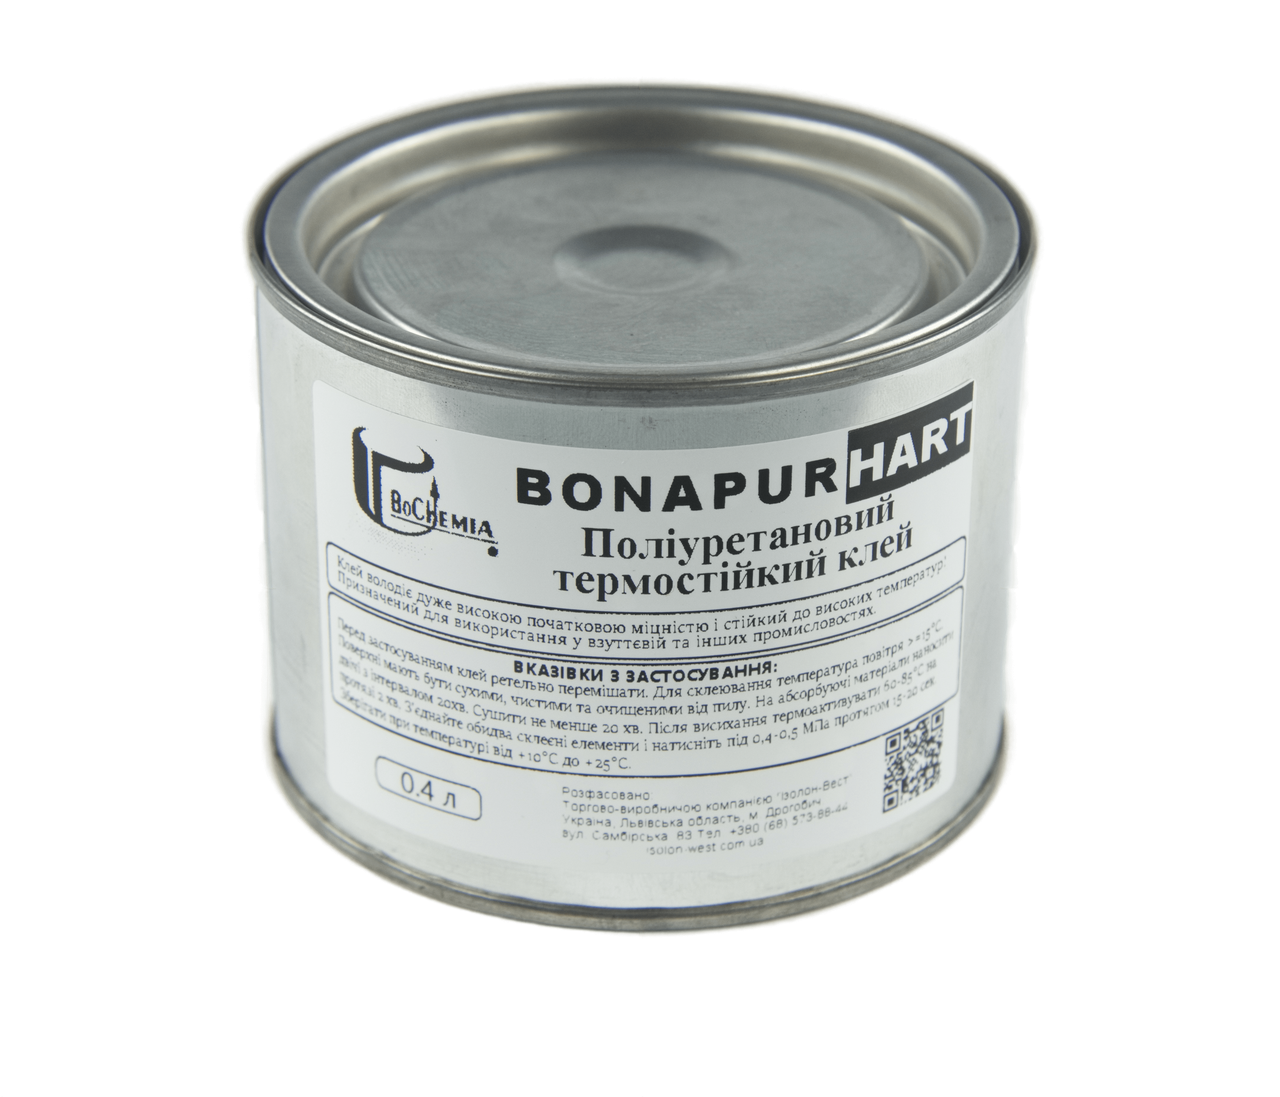 Поліуретановий термостійкий клей BONAPUR HART для шкірозамінника, тканин, пвх, синтетичної шкіри анонс фото